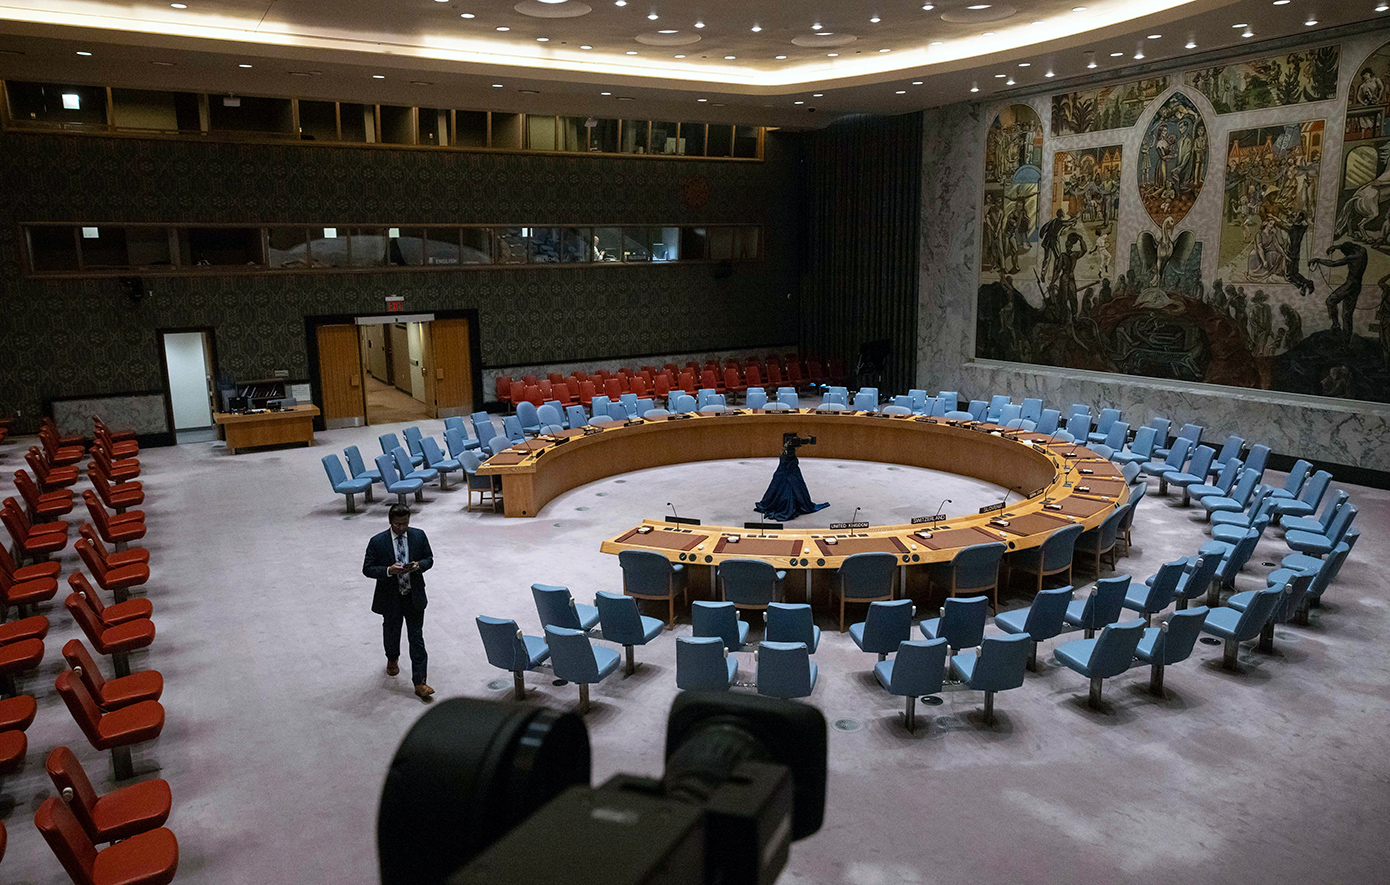 Ιράν και Πακιστάν ζητούν από το Συμβούλιο Ασφαλείας του ΟΗΕ να αναλάβει δράση εναντίον του Ισραήλ